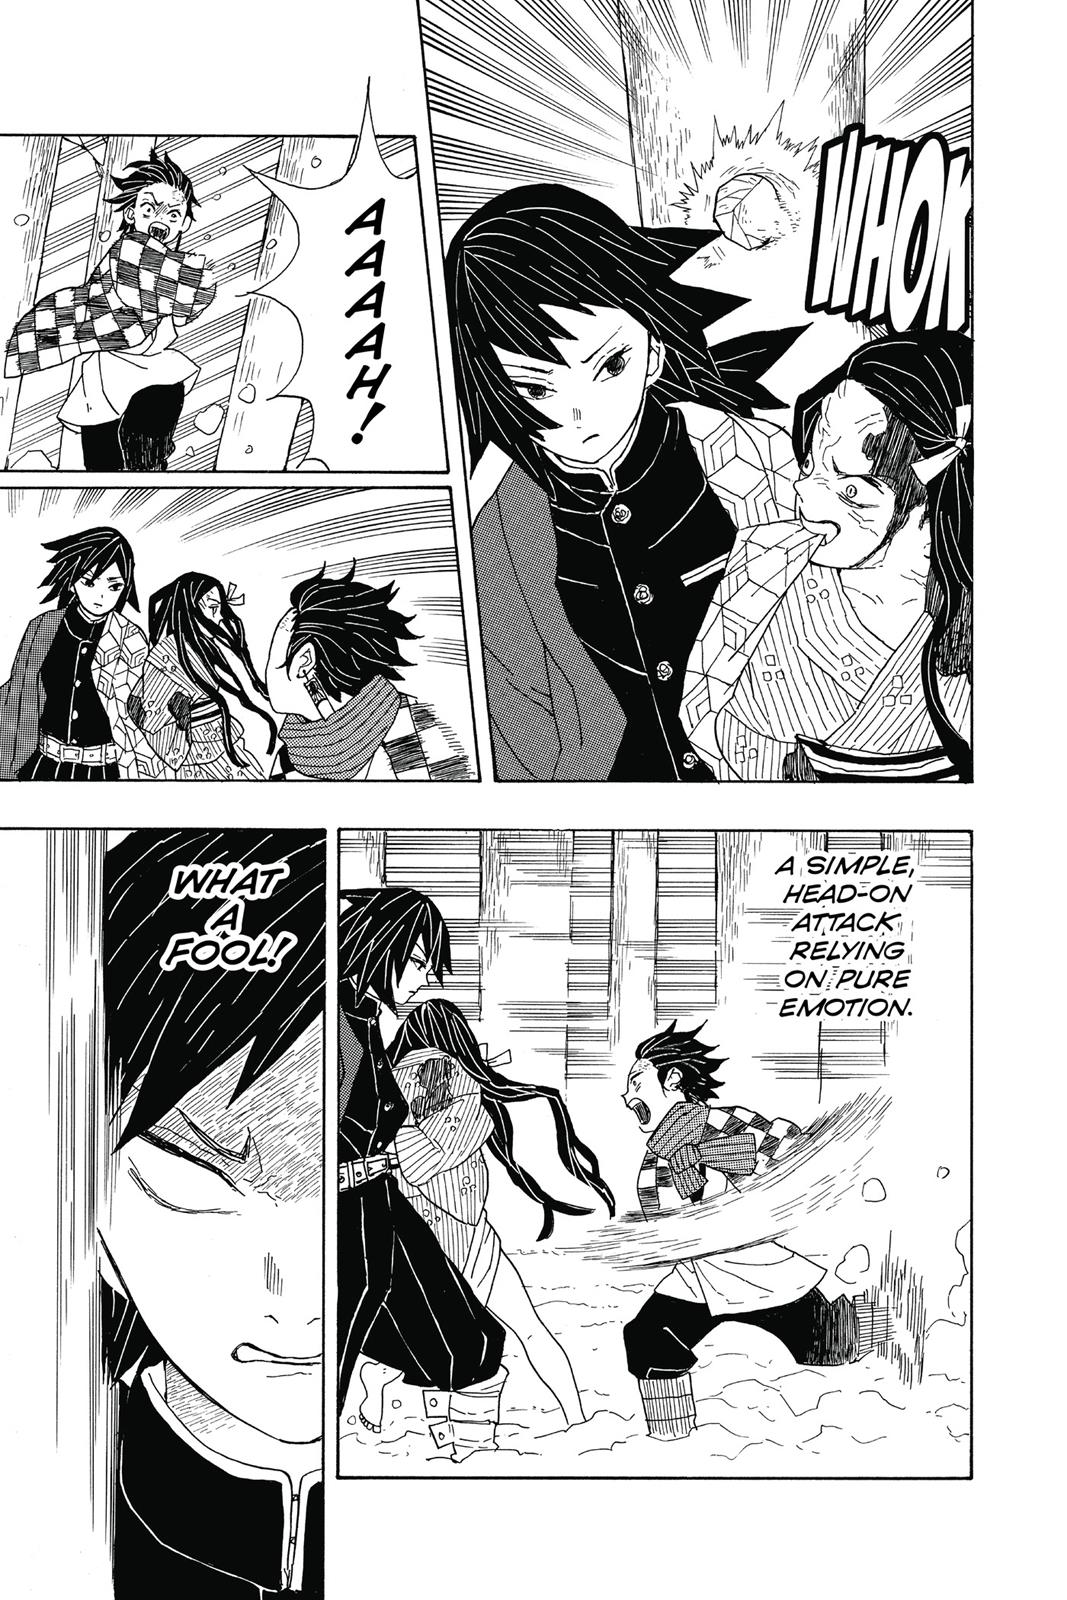 Demon Slayer Manga Manga Chapter - 1 - image 26